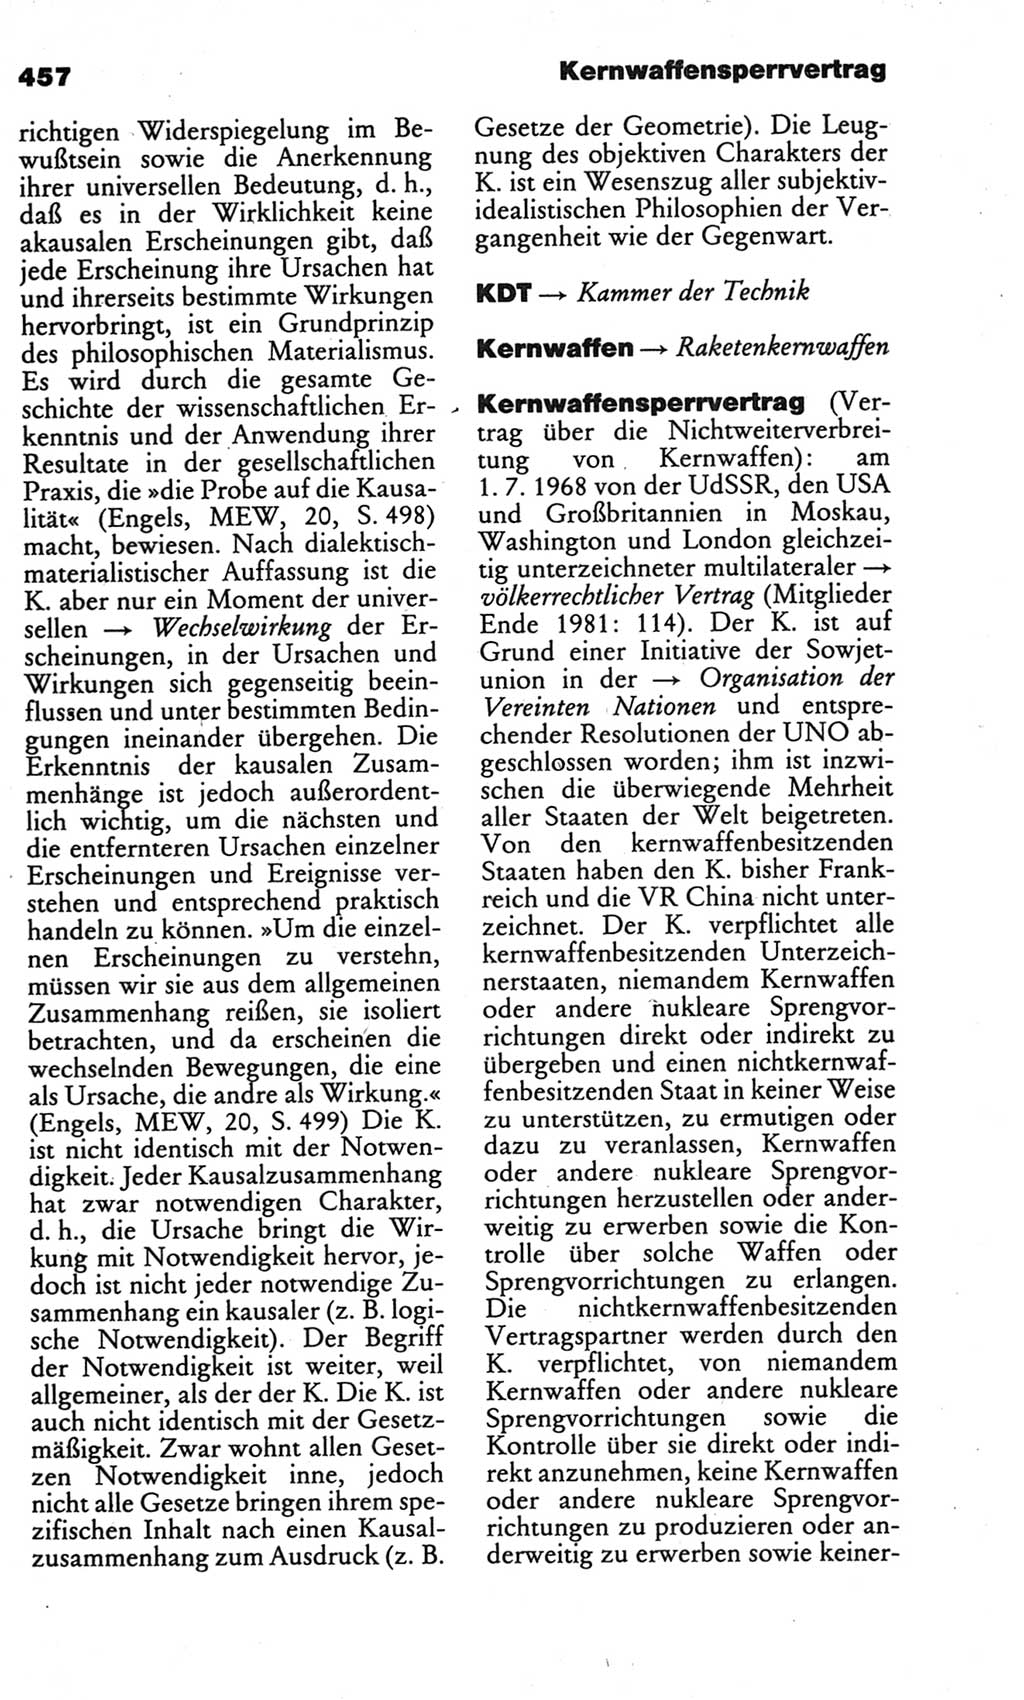 Kleines politisches Wörterbuch [Deutsche Demokratische Republik (DDR)] 1986, Seite 457 (Kl. pol. Wb. DDR 1986, S. 457)